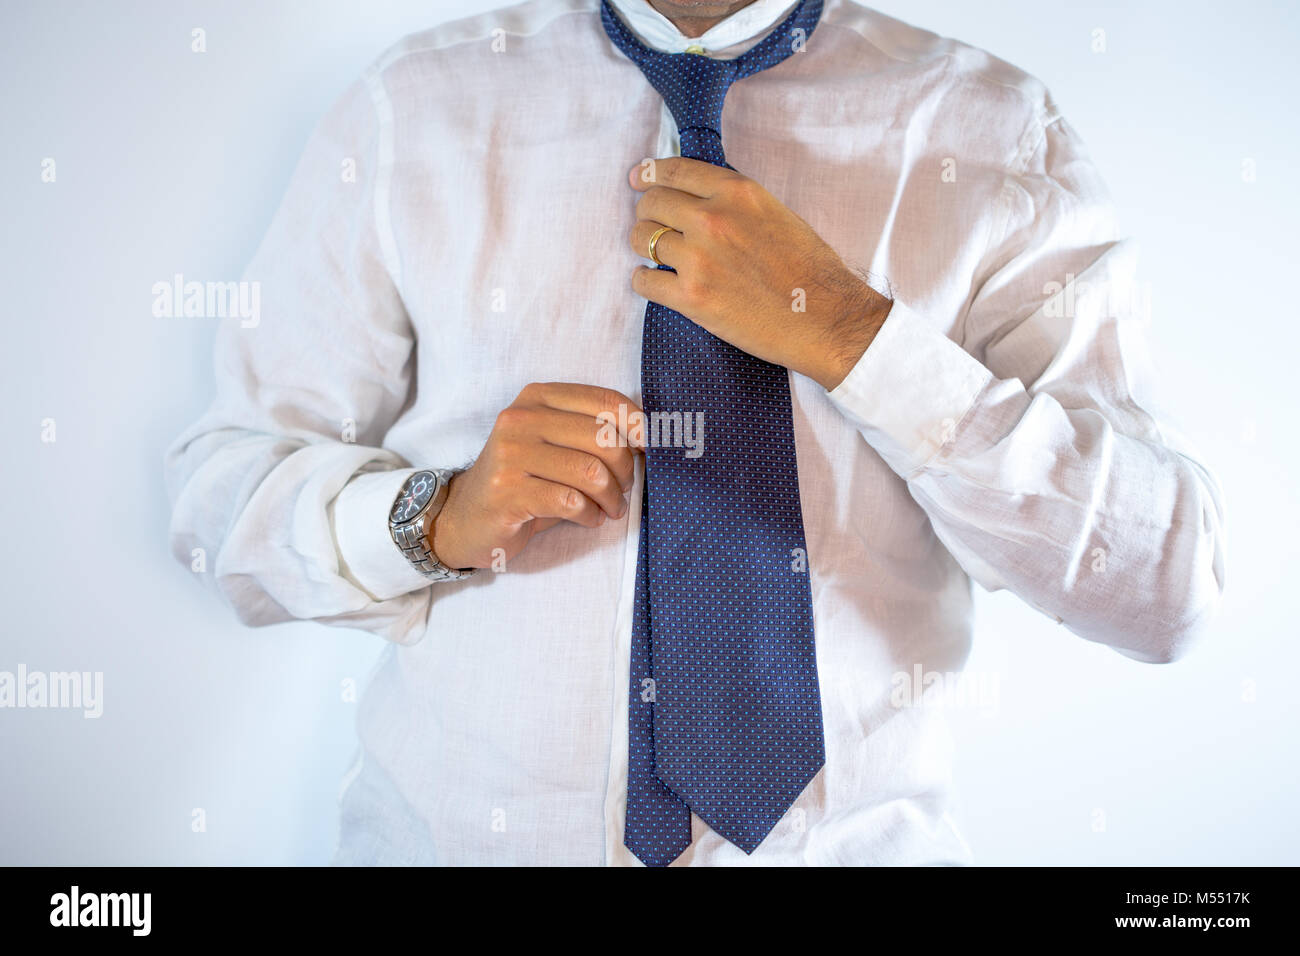 Les gens, les entreprises, la mode et les vêtements concept - close up de l'homme en s'habillant avec chemise et cravate de réglage sur le cou à la maison Banque D'Images